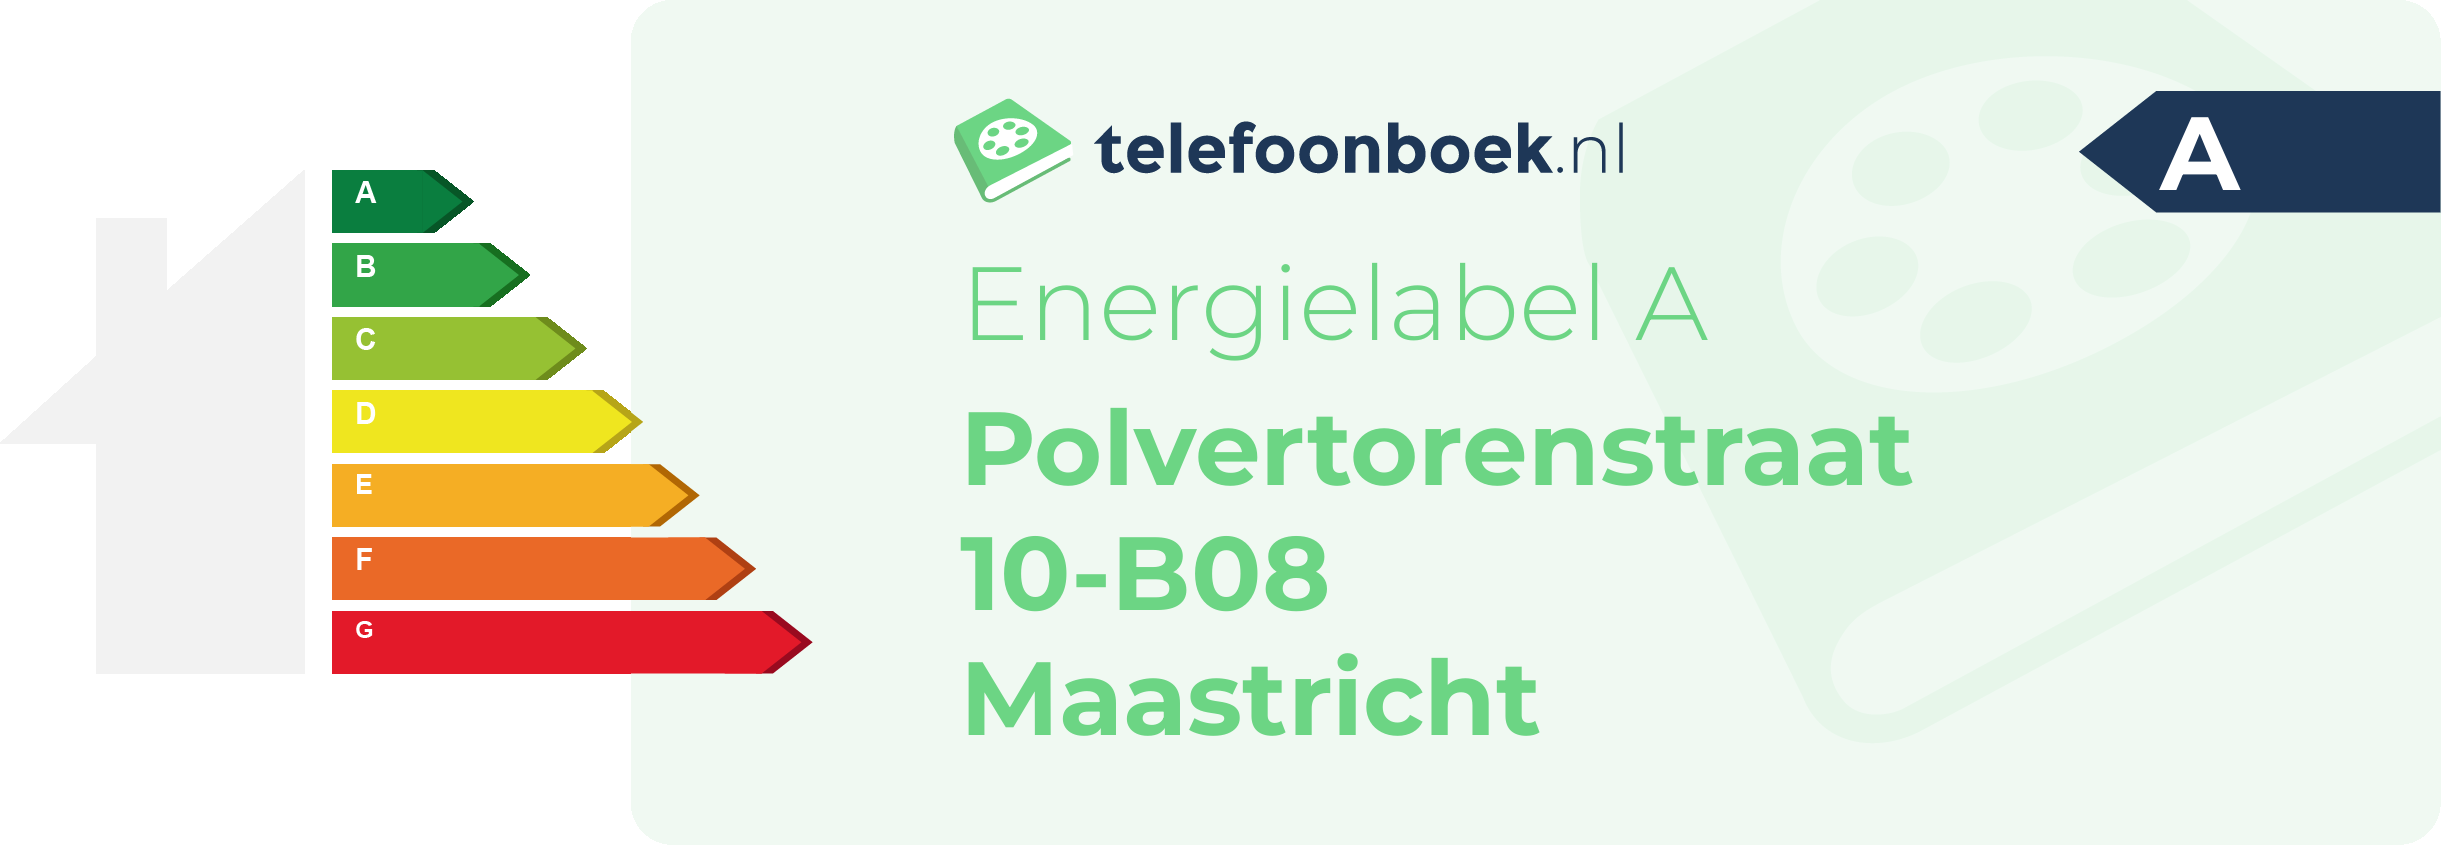 Energielabel Polvertorenstraat 10-B08 Maastricht